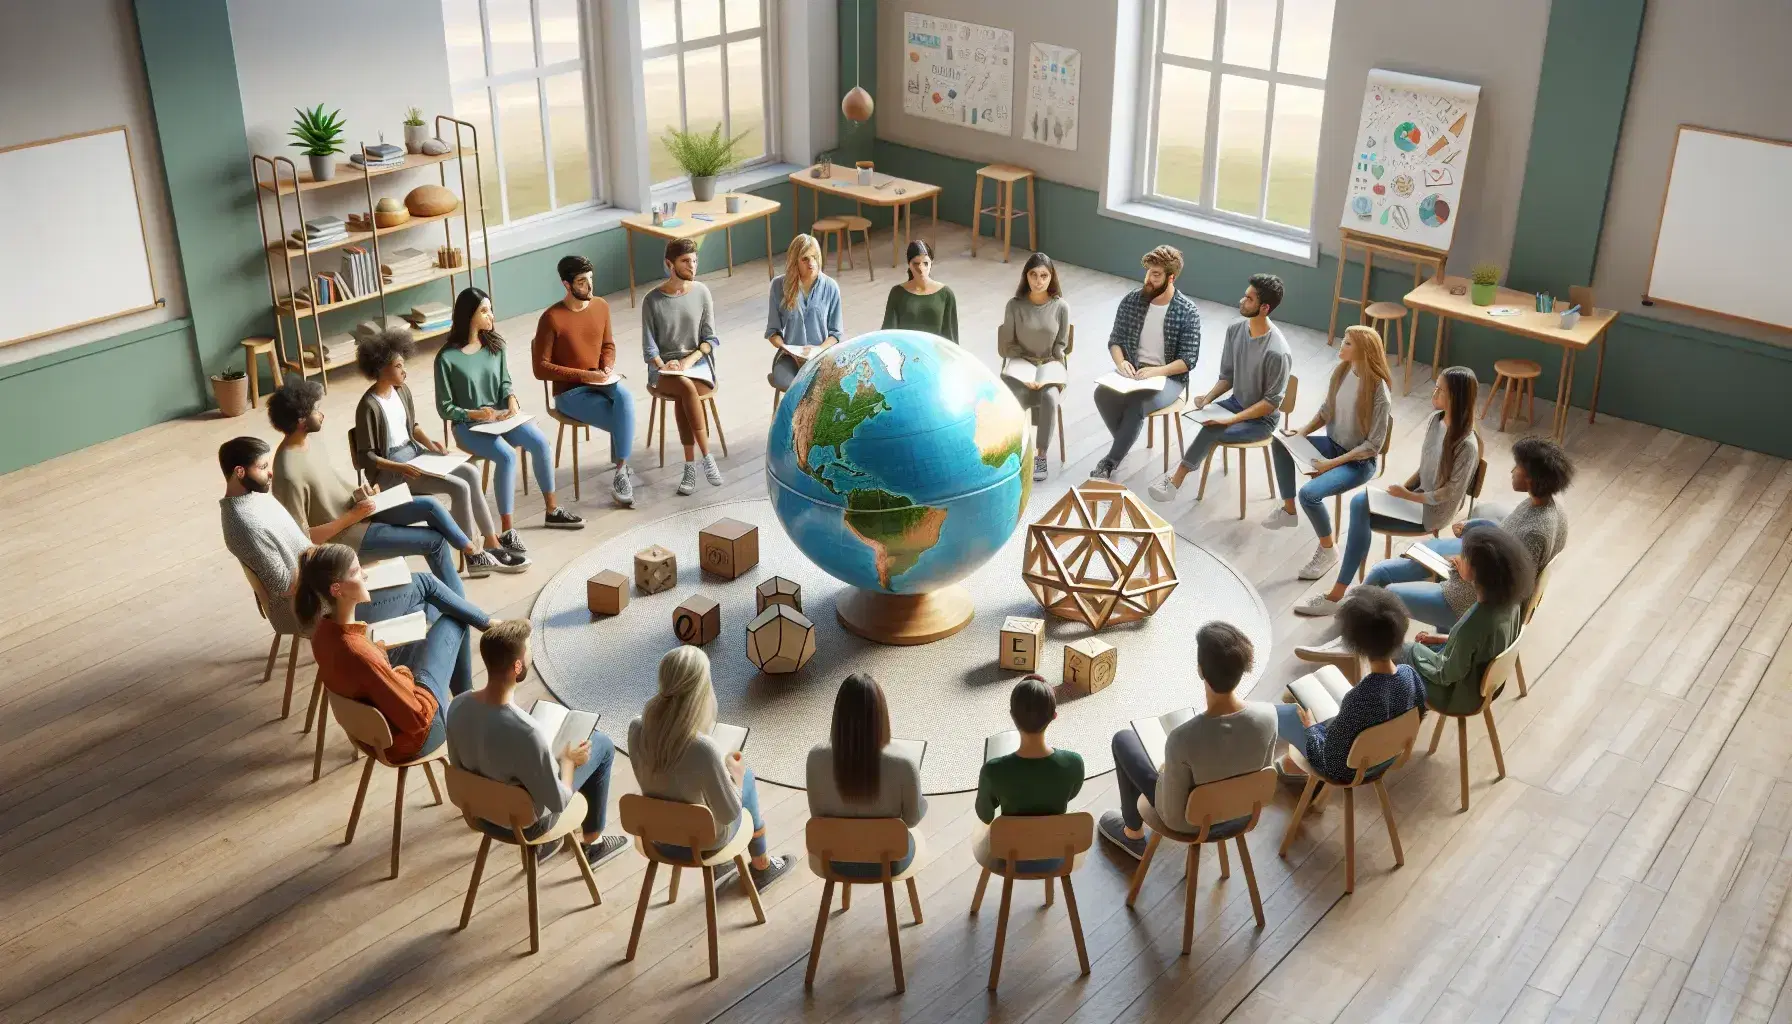 Grupo de estudiantes diversos sentados en círculo en aula iluminada con objetos educativos en mesa central y ambiente de colaboración.